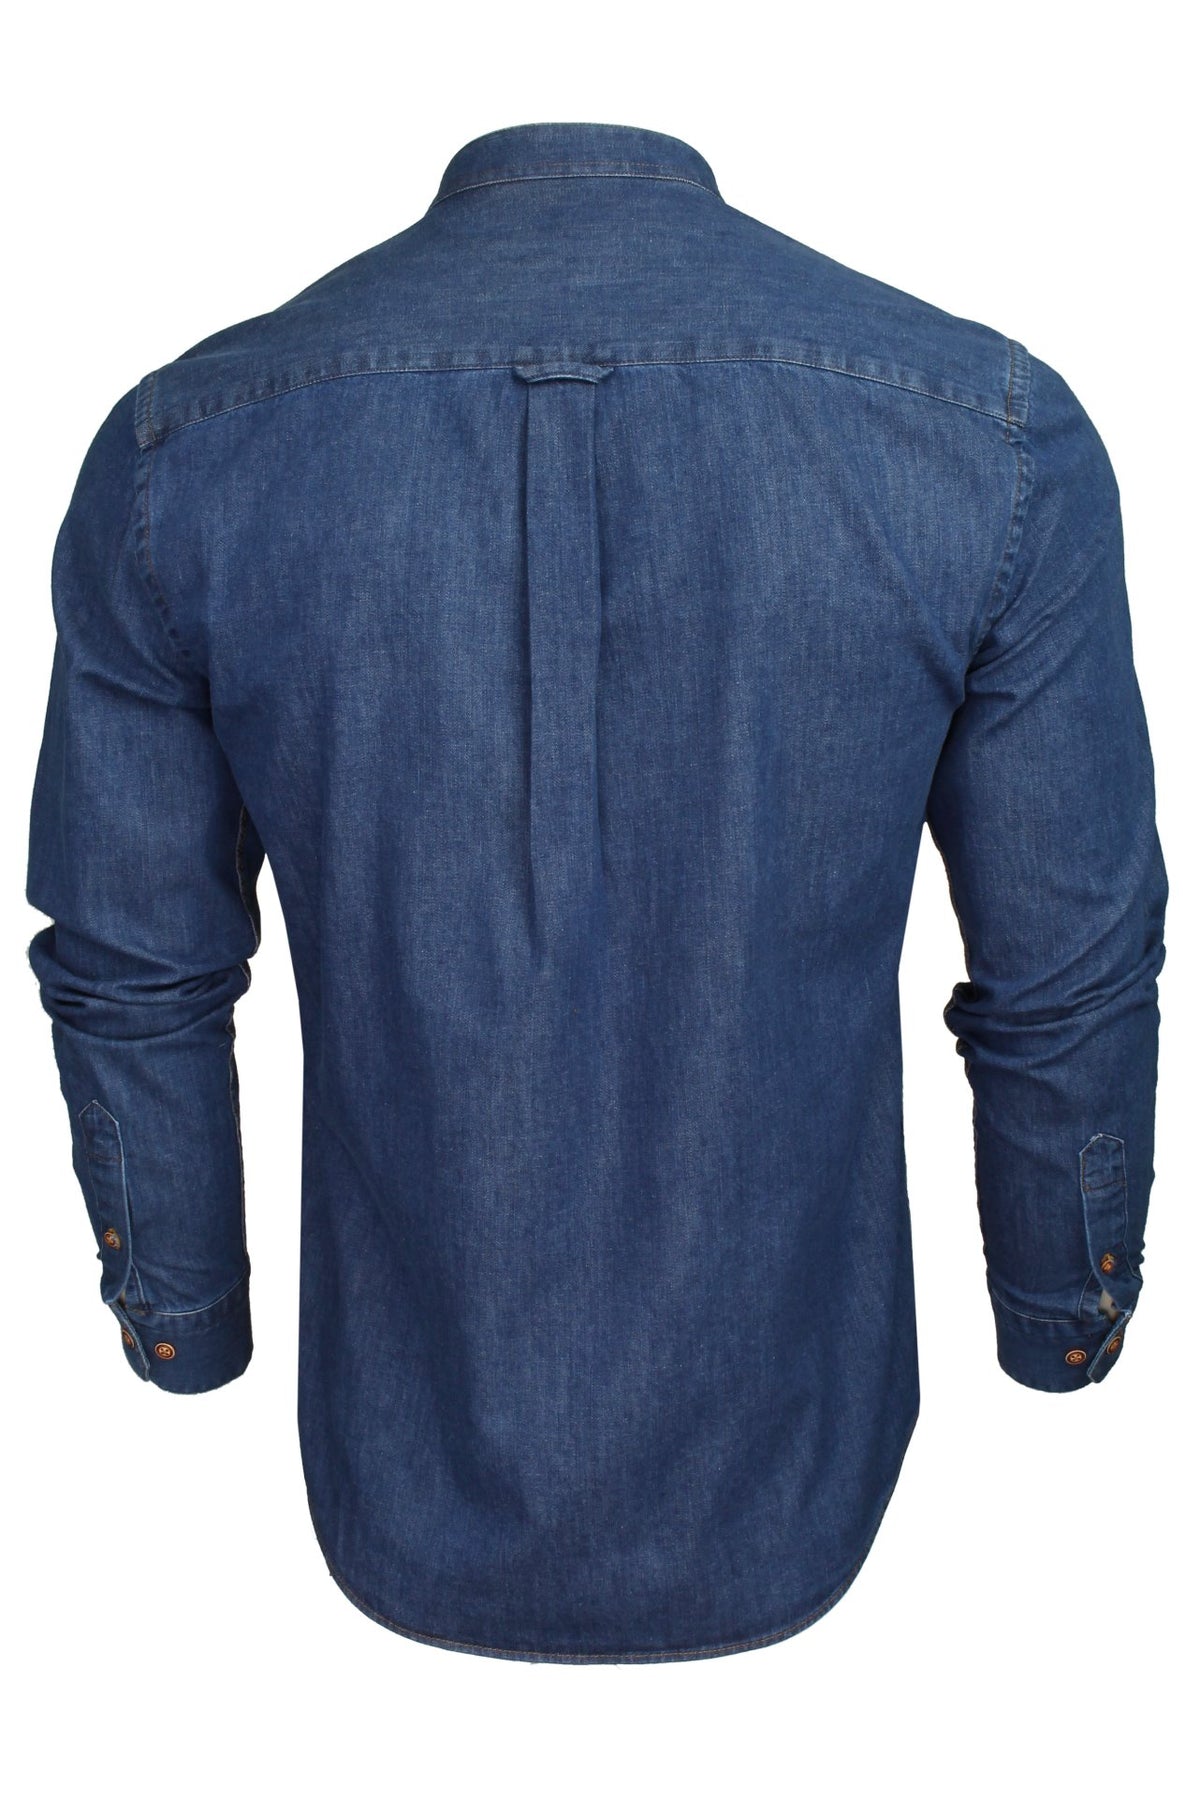 Xact Mens 6.6 oz Denim Band / Grandad Collar Shirt - Long Sleeved, 03, Xsh1173, Medium Blue Denim